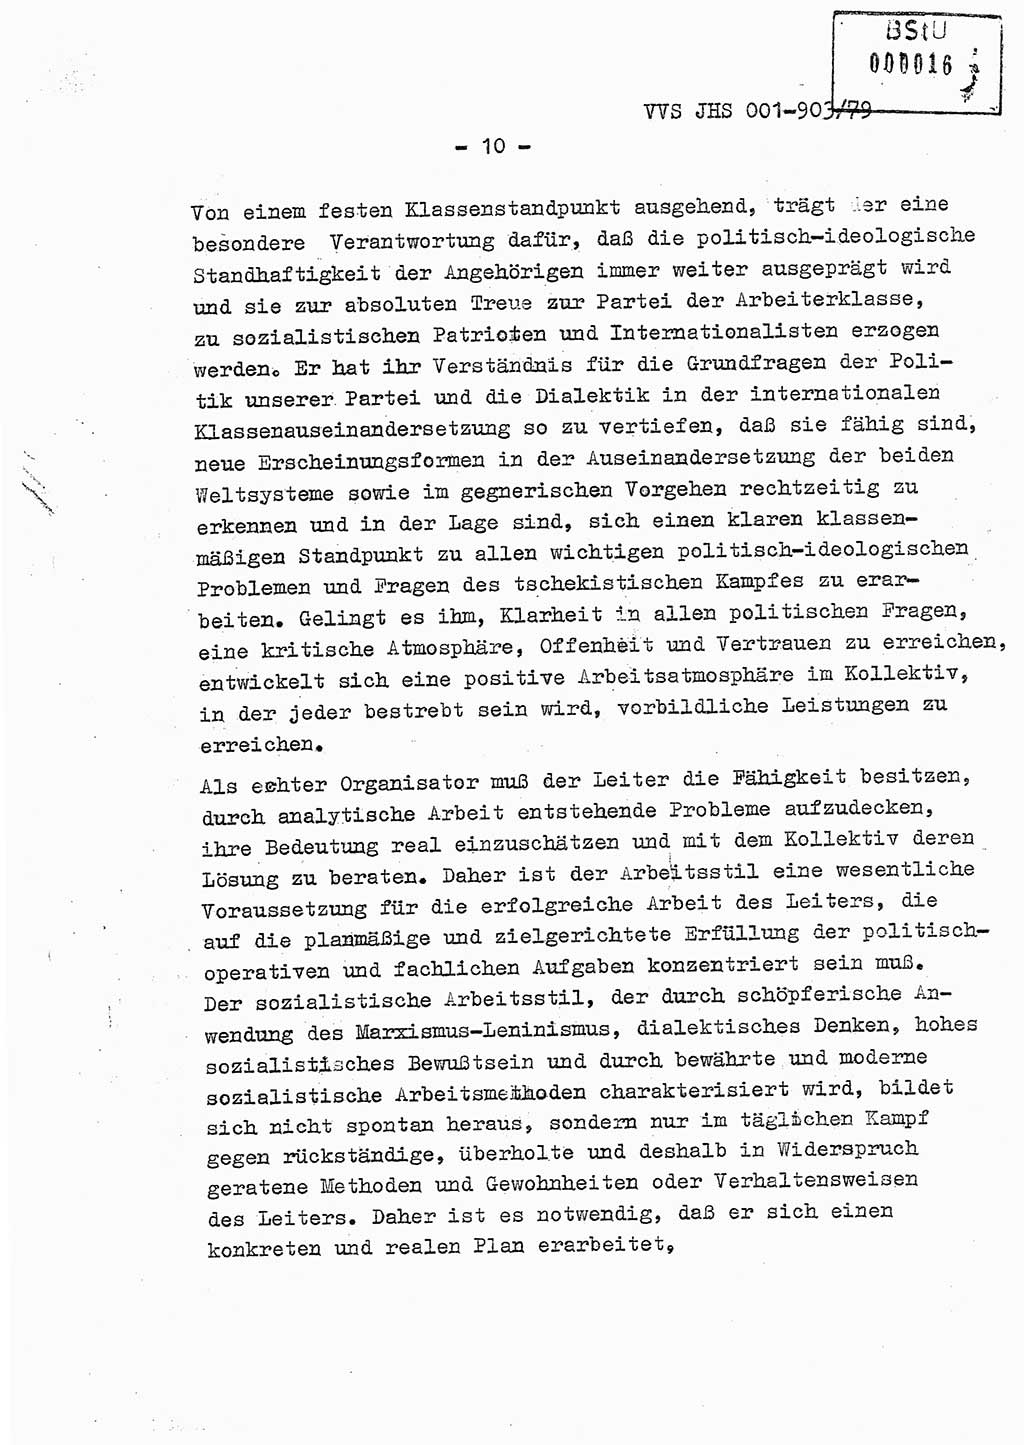 Fachschulabschlußarbeit Oberleutnant Jochen Pfeffer (HA Ⅸ/AGL), Ministerium für Staatssicherheit (MfS) [Deutsche Demokratische Republik (DDR)], Juristische Hochschule (JHS), Vertrauliche Verschlußsache (VVS) 001-903/79, Potsdam 1979, Seite 10 (FS-Abschl.-Arb. MfS DDR JHS VVS 001-903/79 1979, S. 10)